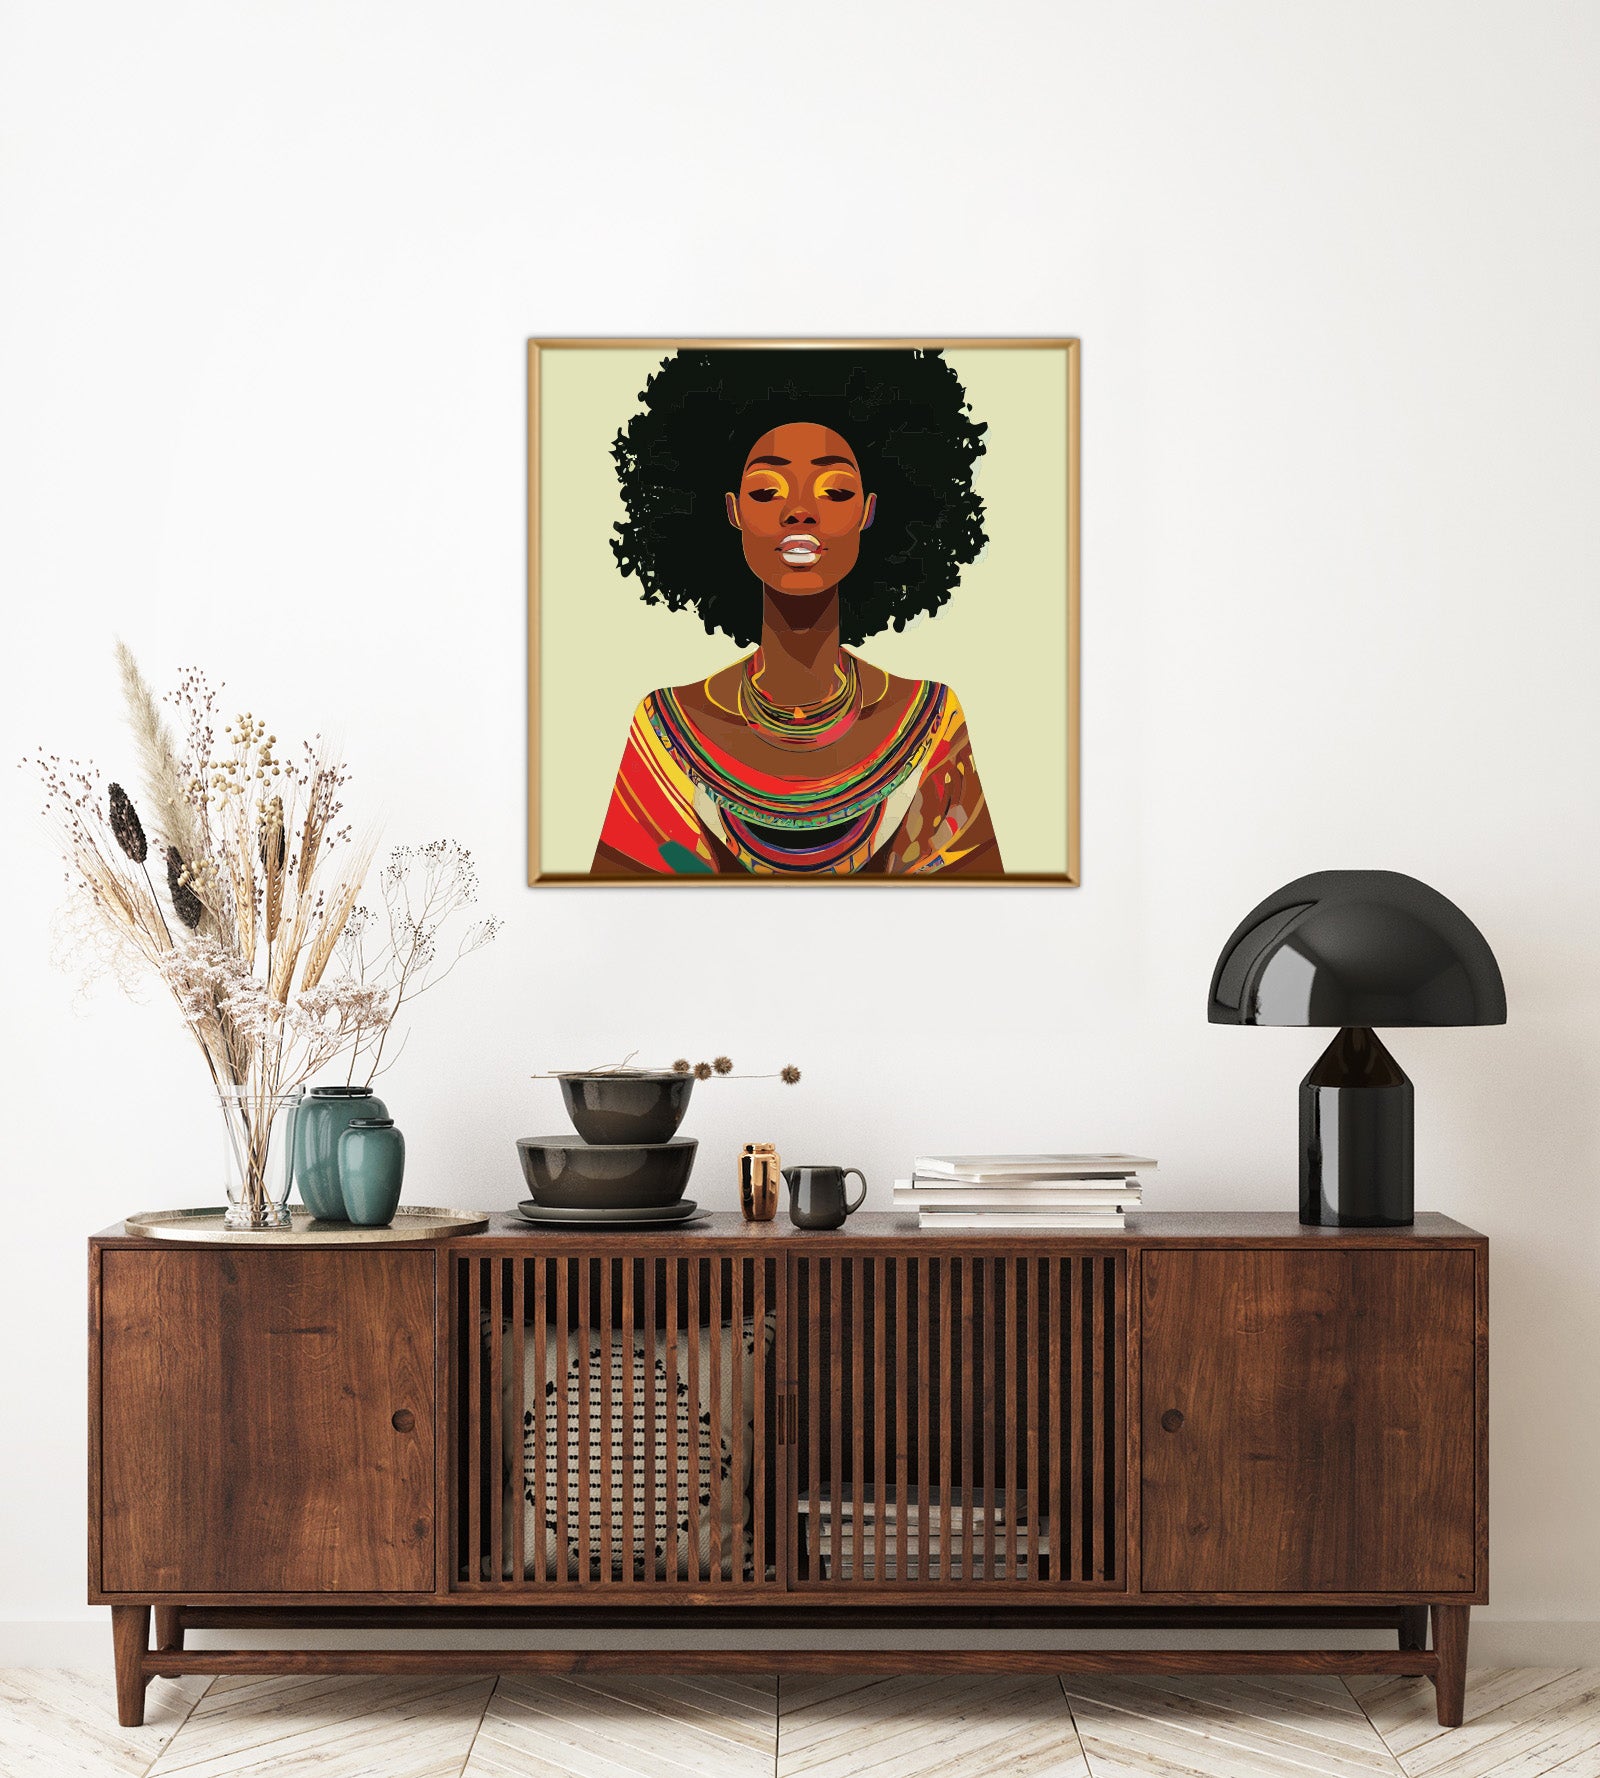 لوحة كانفس (نمط افريقي) لامرأة افريقية